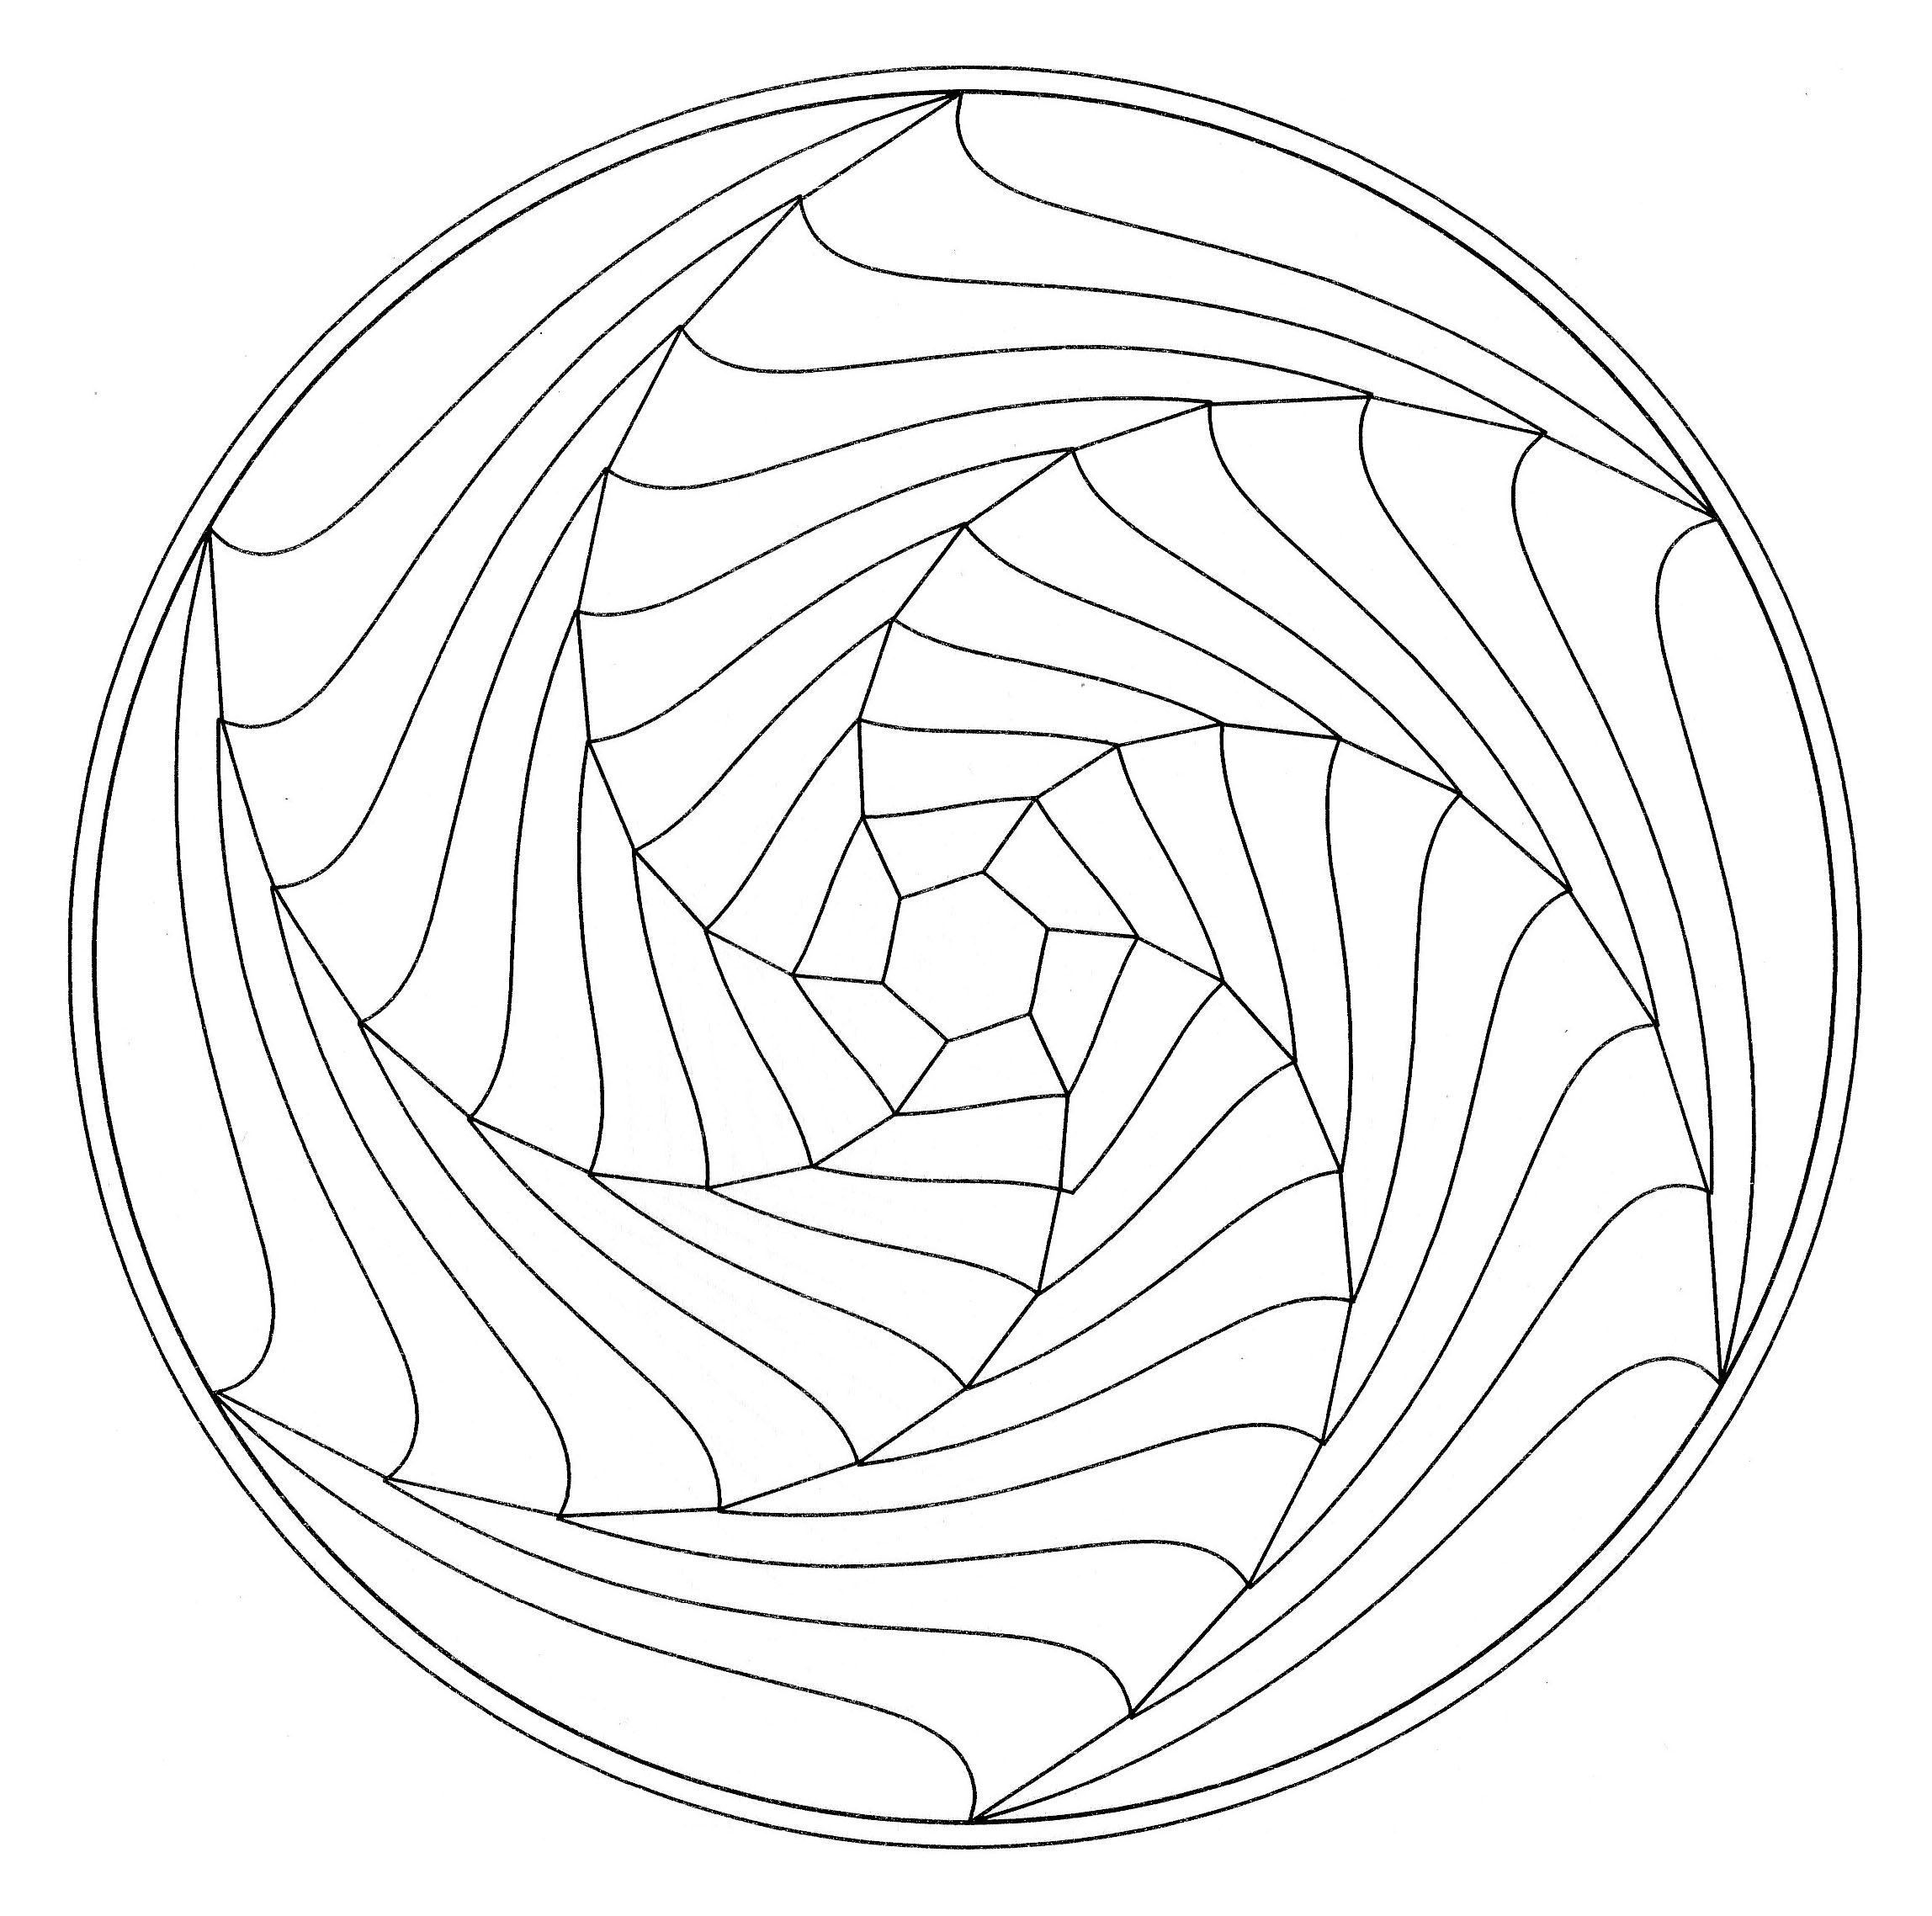 A simple optical illusion in a Mandala